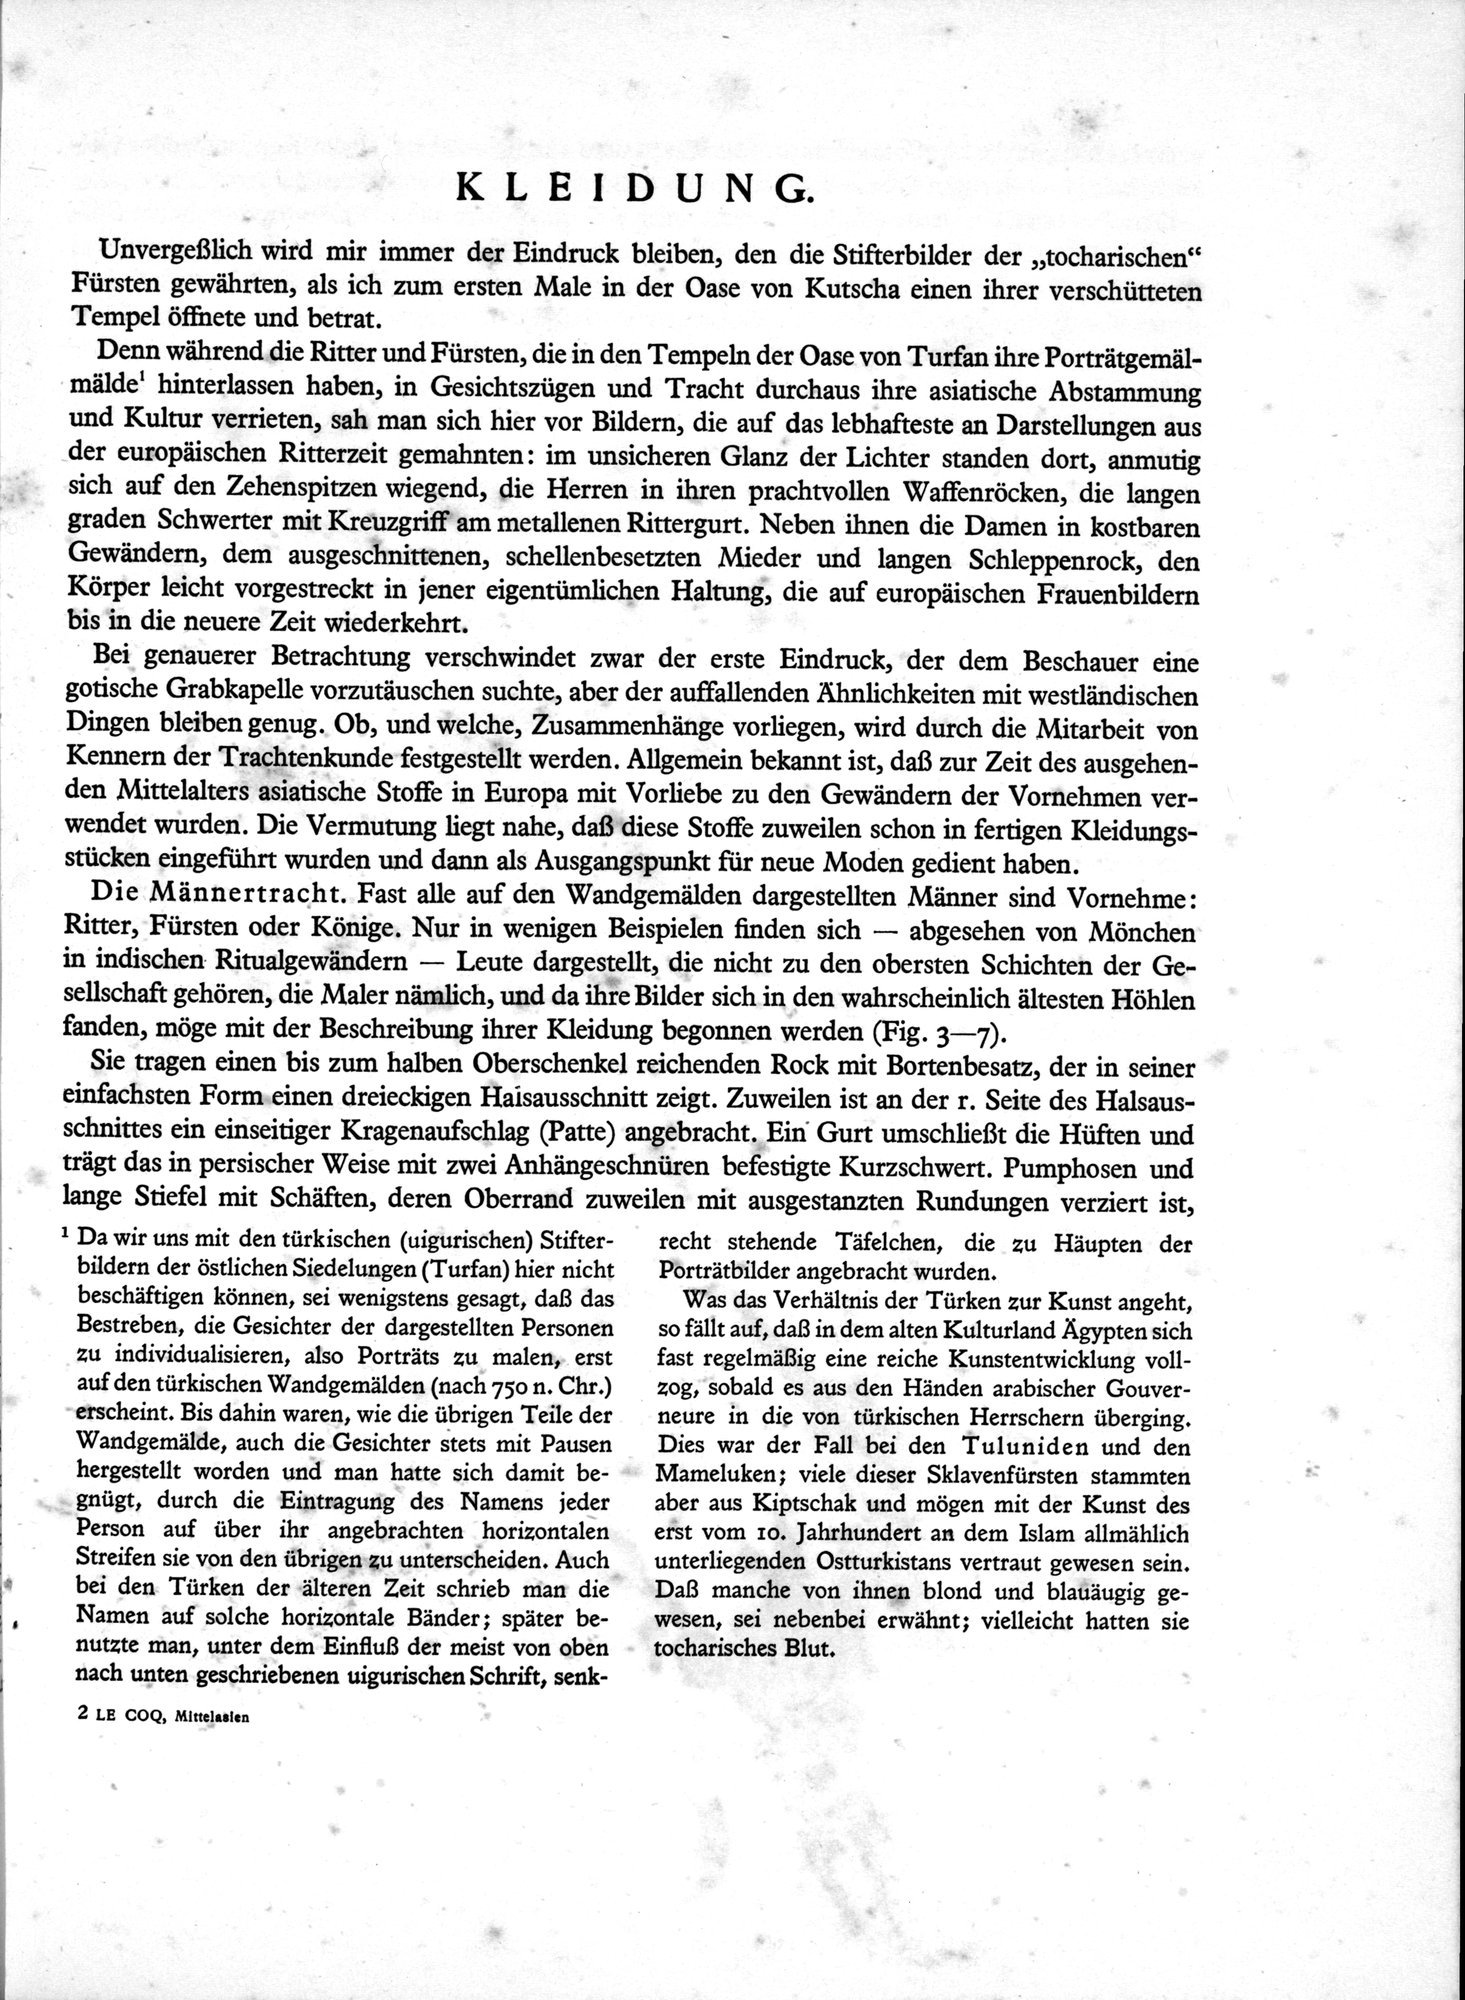 Bilderatlas zur Kunst und Kulturgeschichte Mittel-Asiens : vol.1 / Page 13 (Grayscale High Resolution Image)